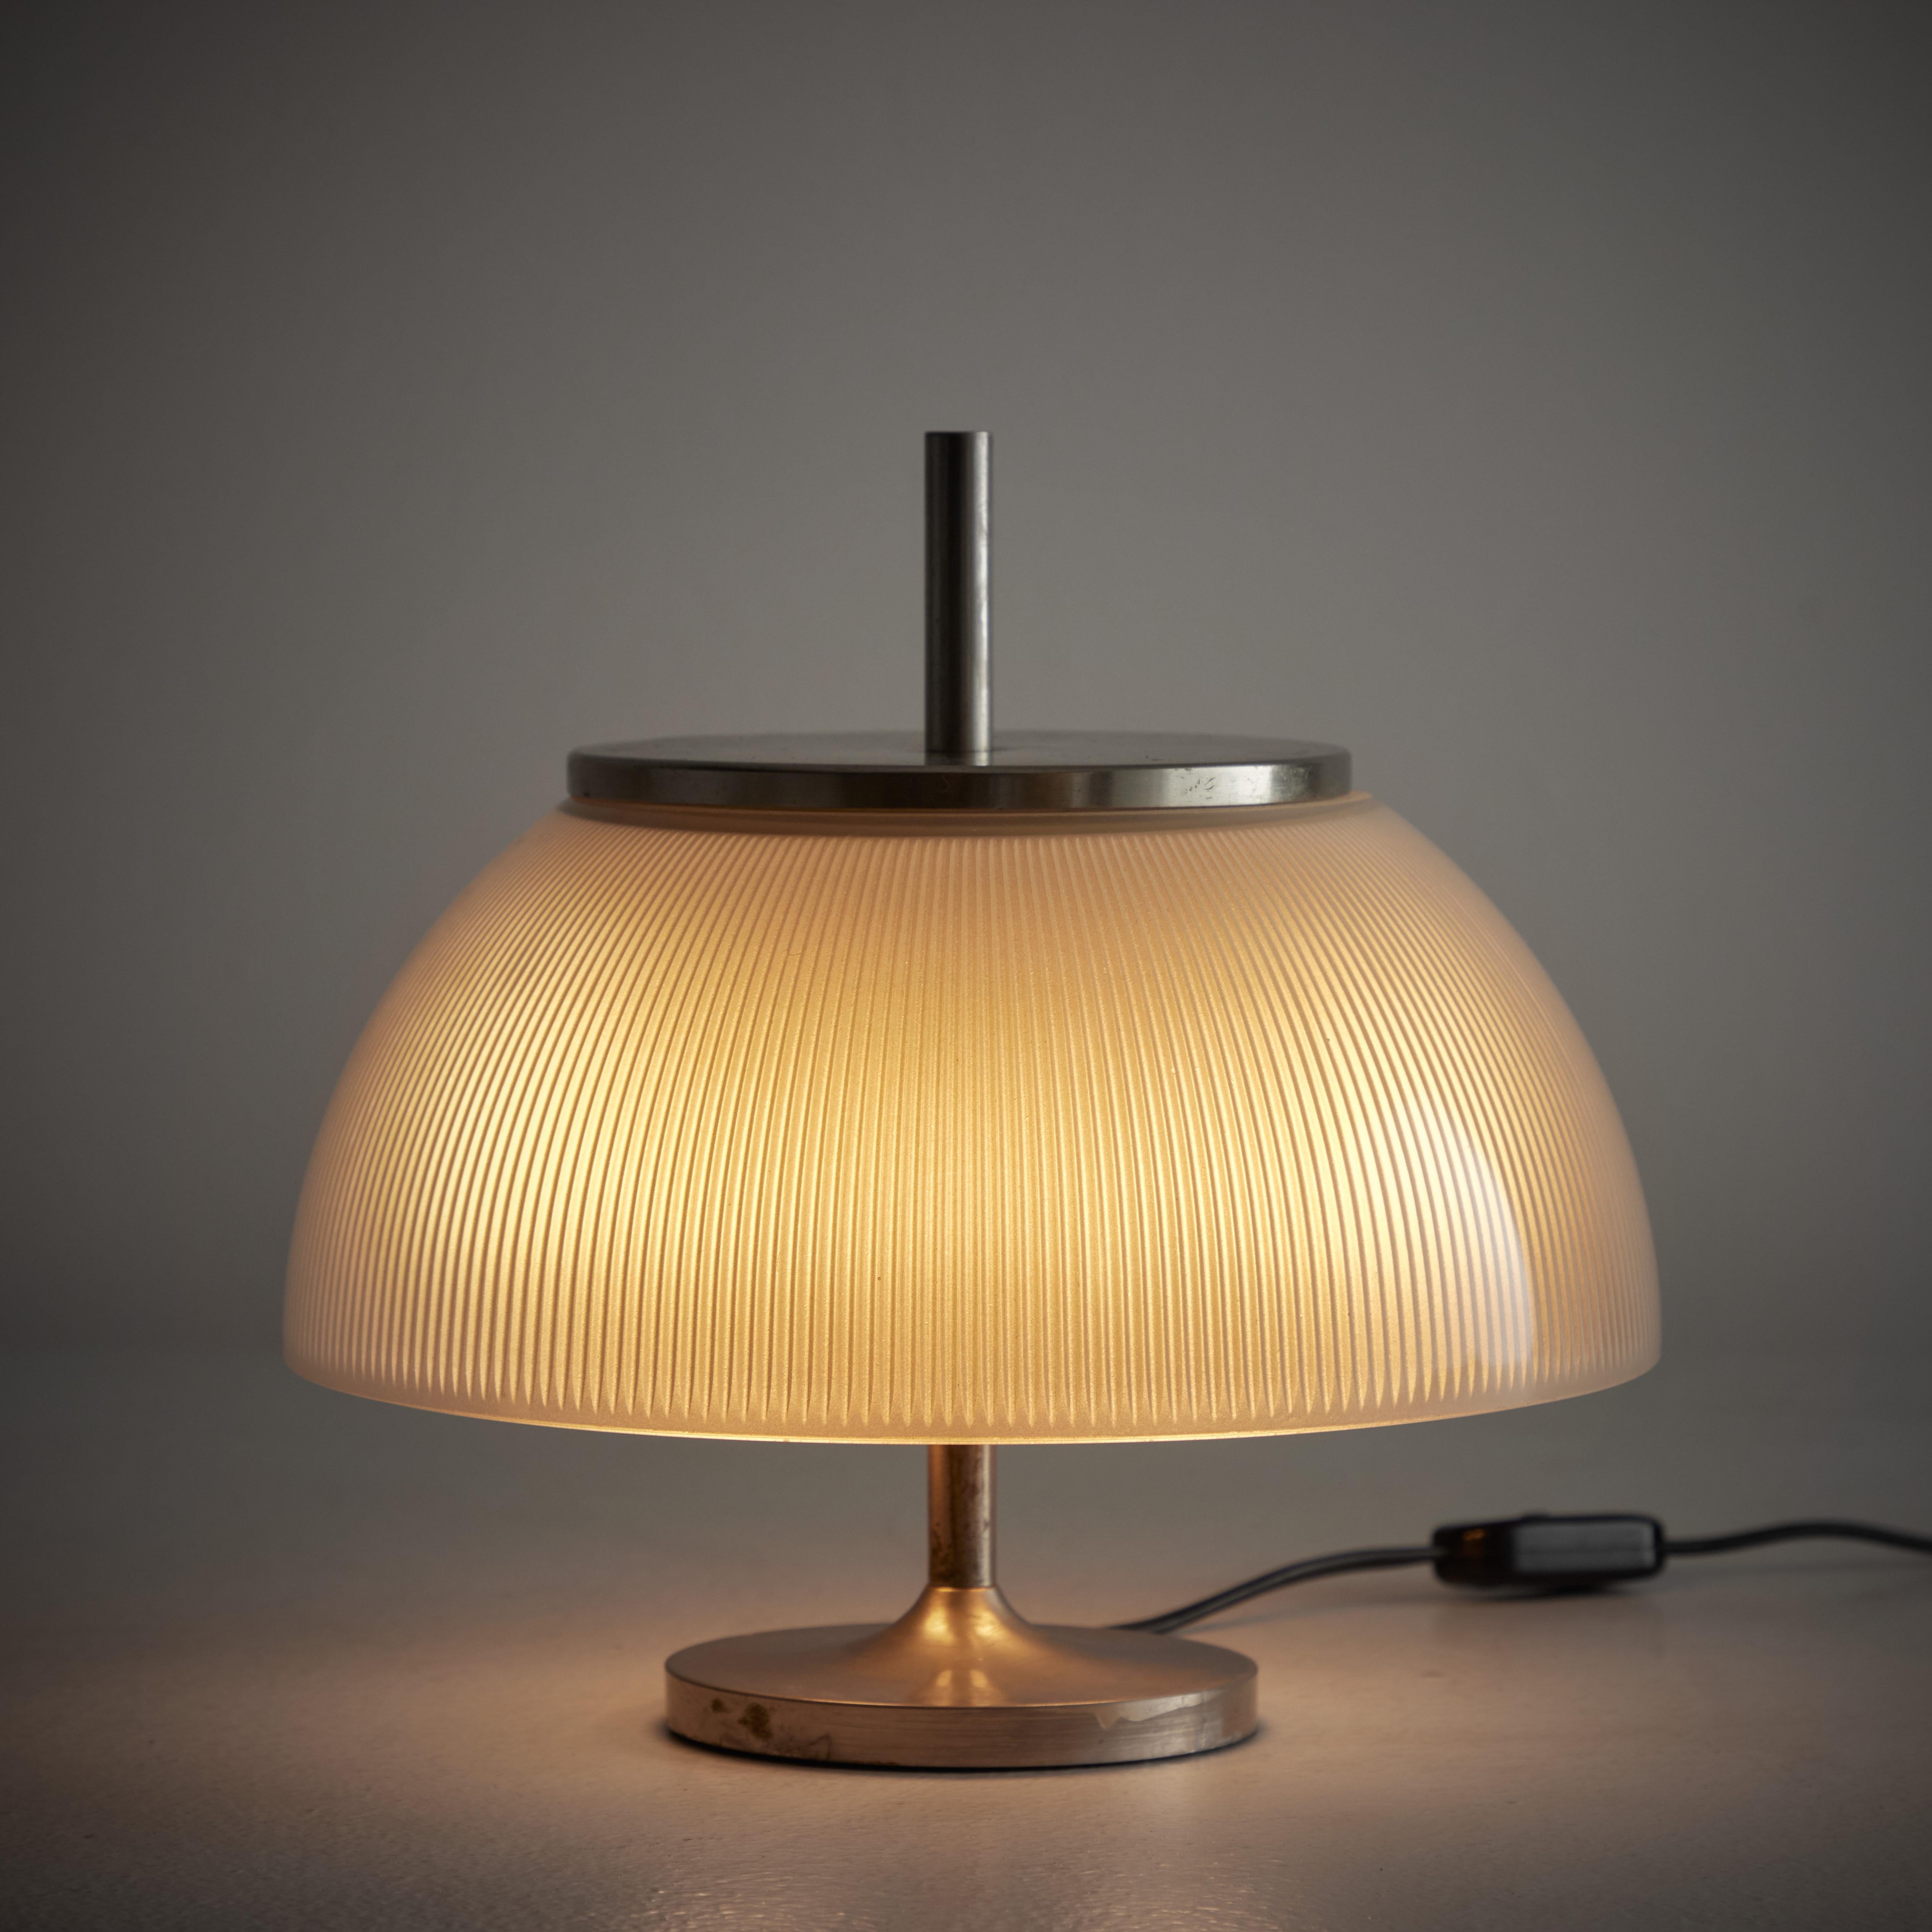 'Alfetta' Table Lamp by Sergio Mazza for Artemide 1